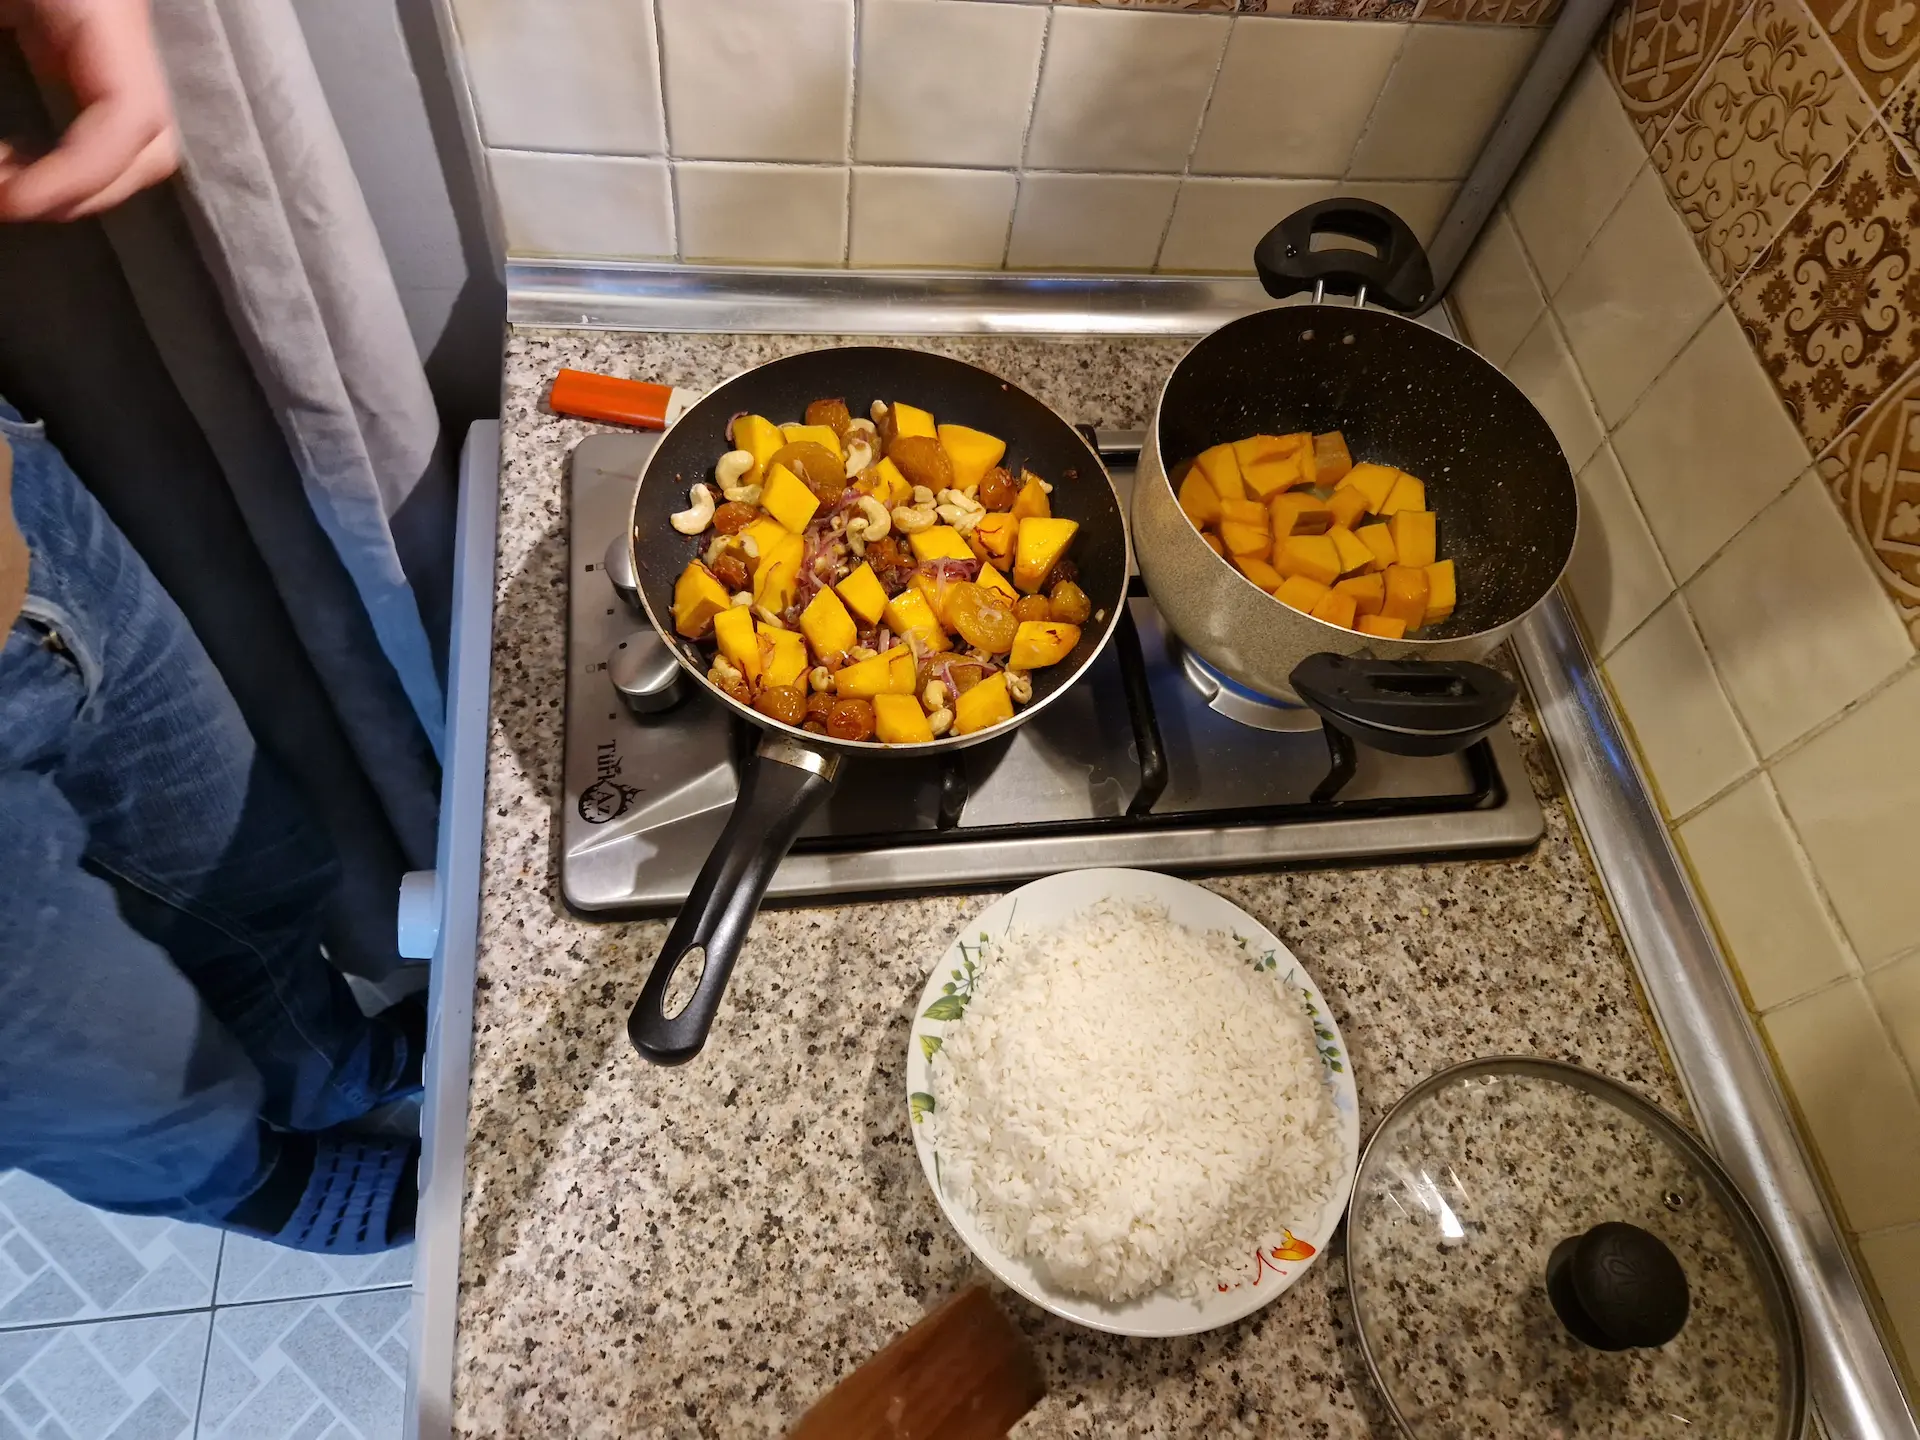 On cuisine un plov à la maison, on est en train de faire revenir de la courge et des fruits secs dans une casserole avant d'y ajouter le riz à moitié cuit, qui finira sa cuisson à la vapeur avec les légumes.